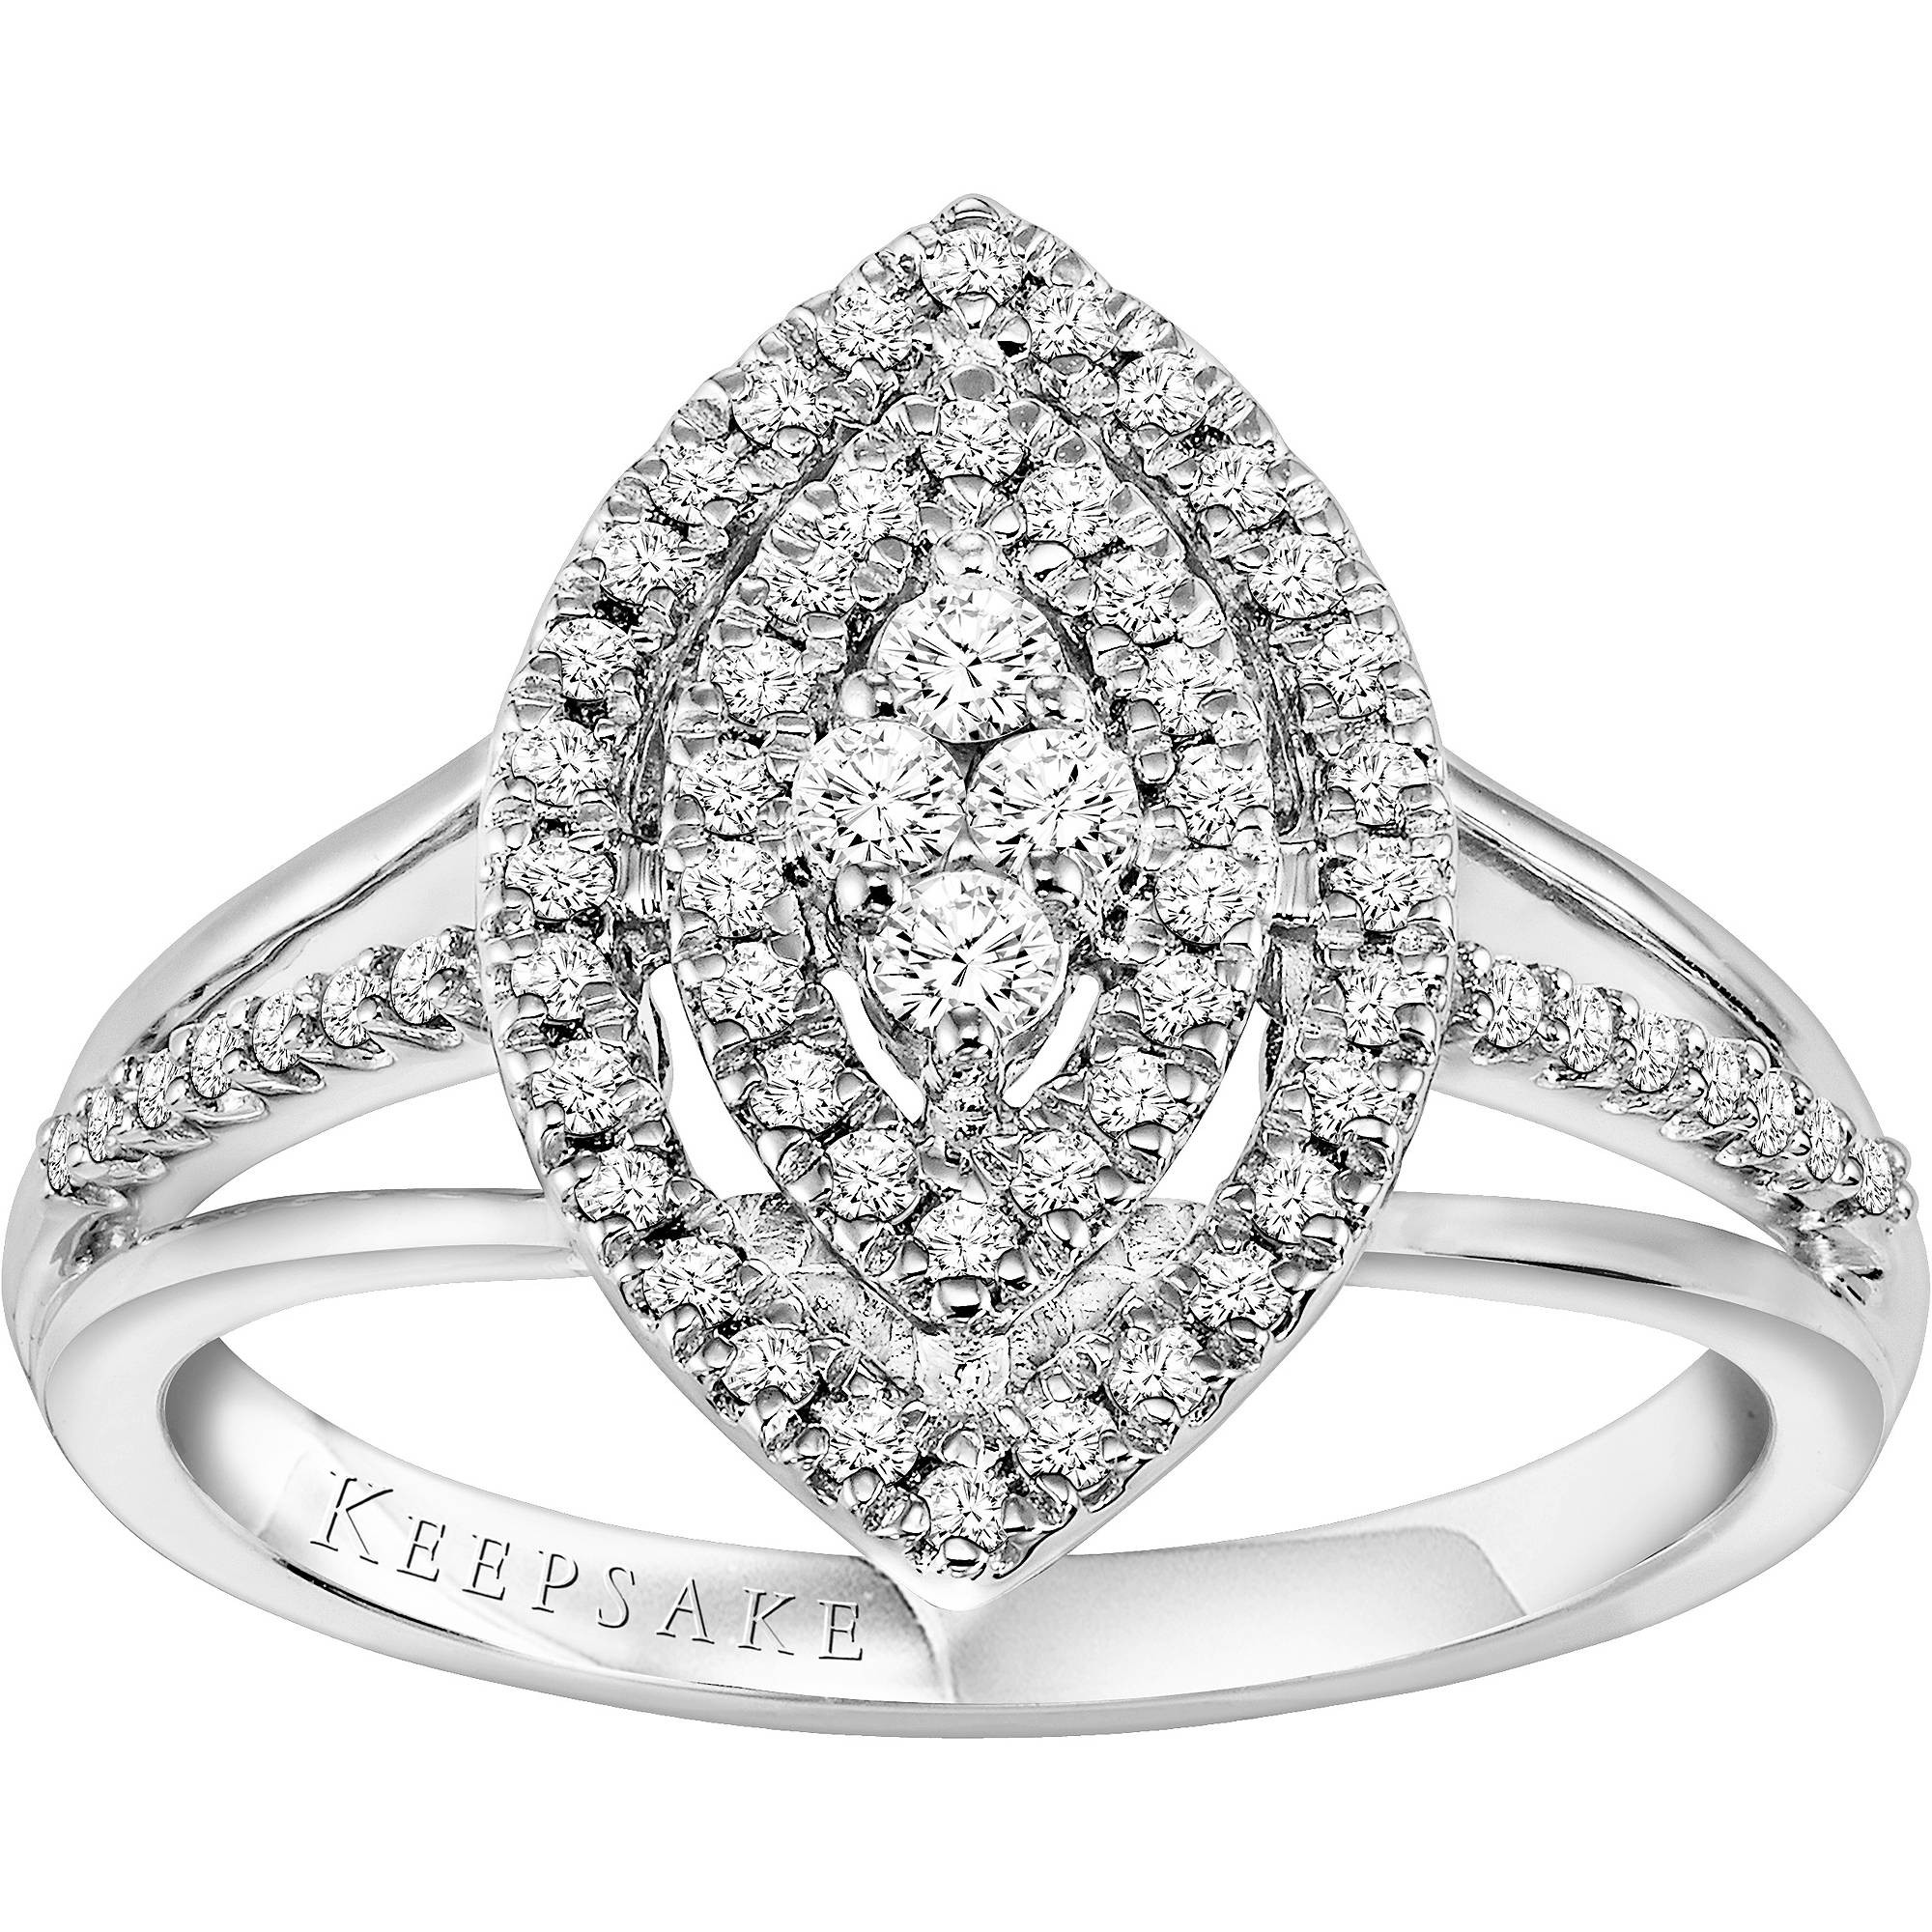 Forever Bride Wedding Rings
 15 Best of Walmart Keepsake Engagement Rings